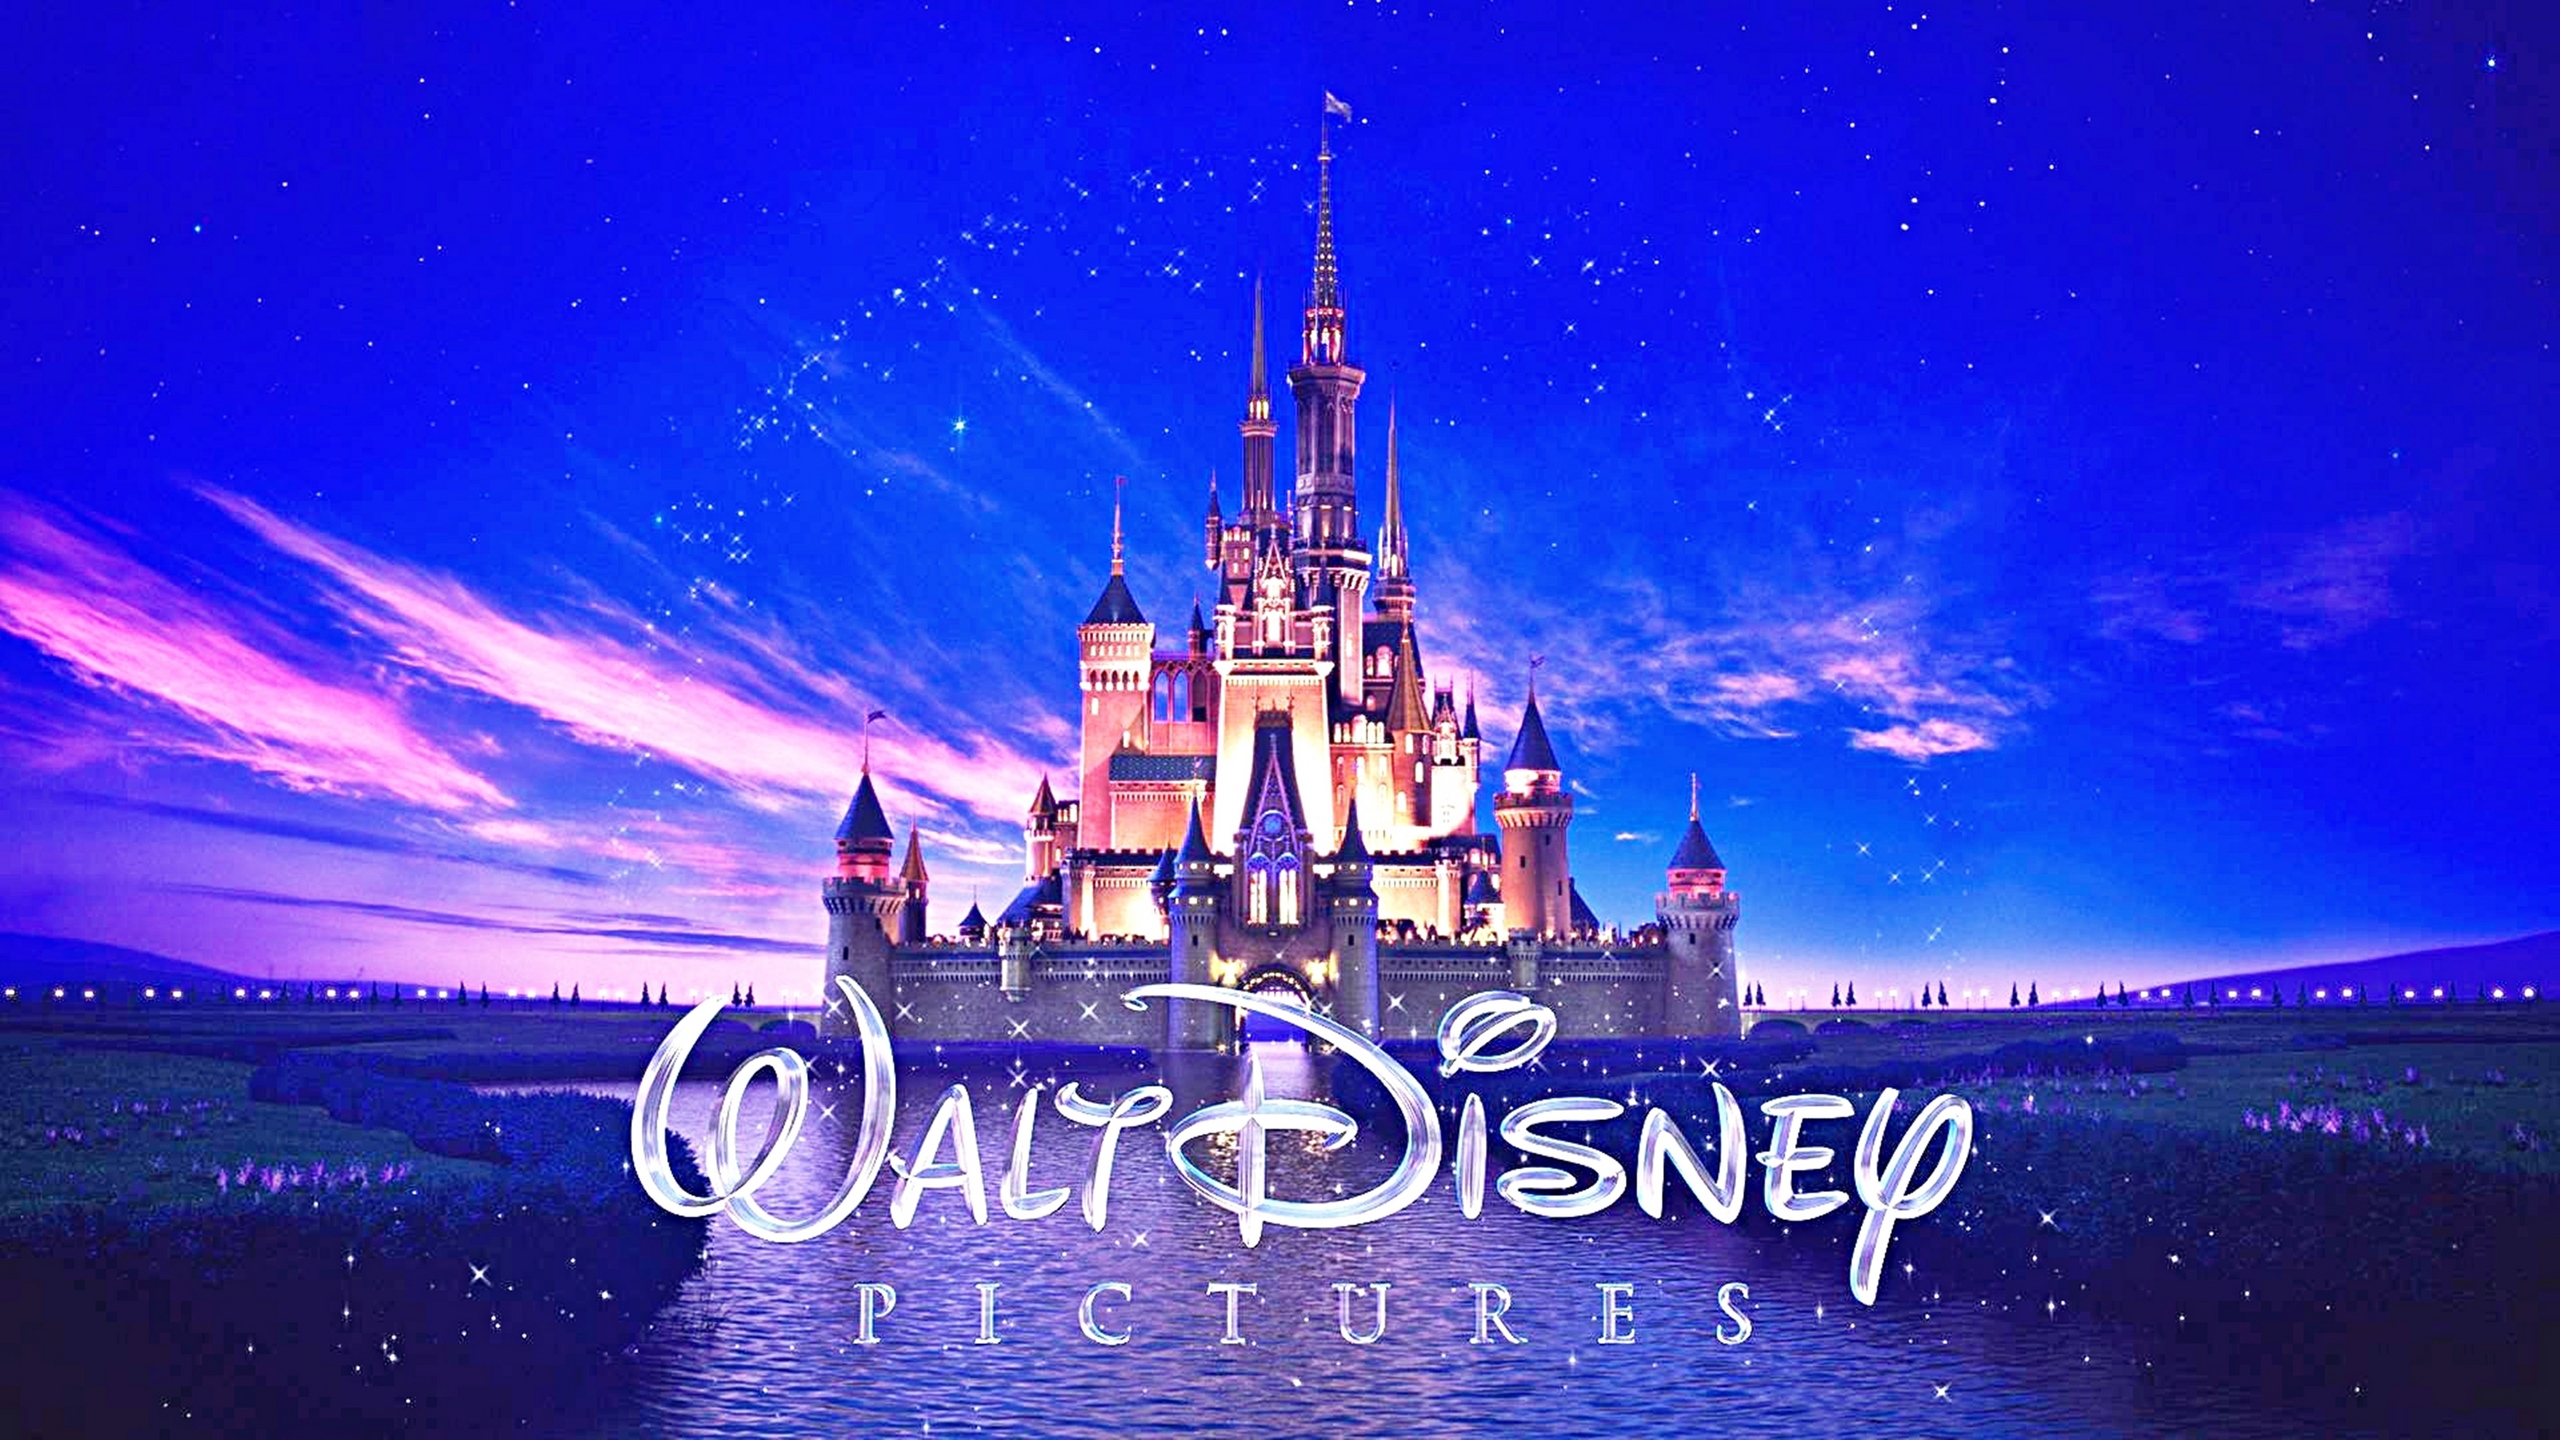 Disney ще купи от Мърдок за 52.4 млрд. долара почти целия телевизионен и филмов бизнес на Fox